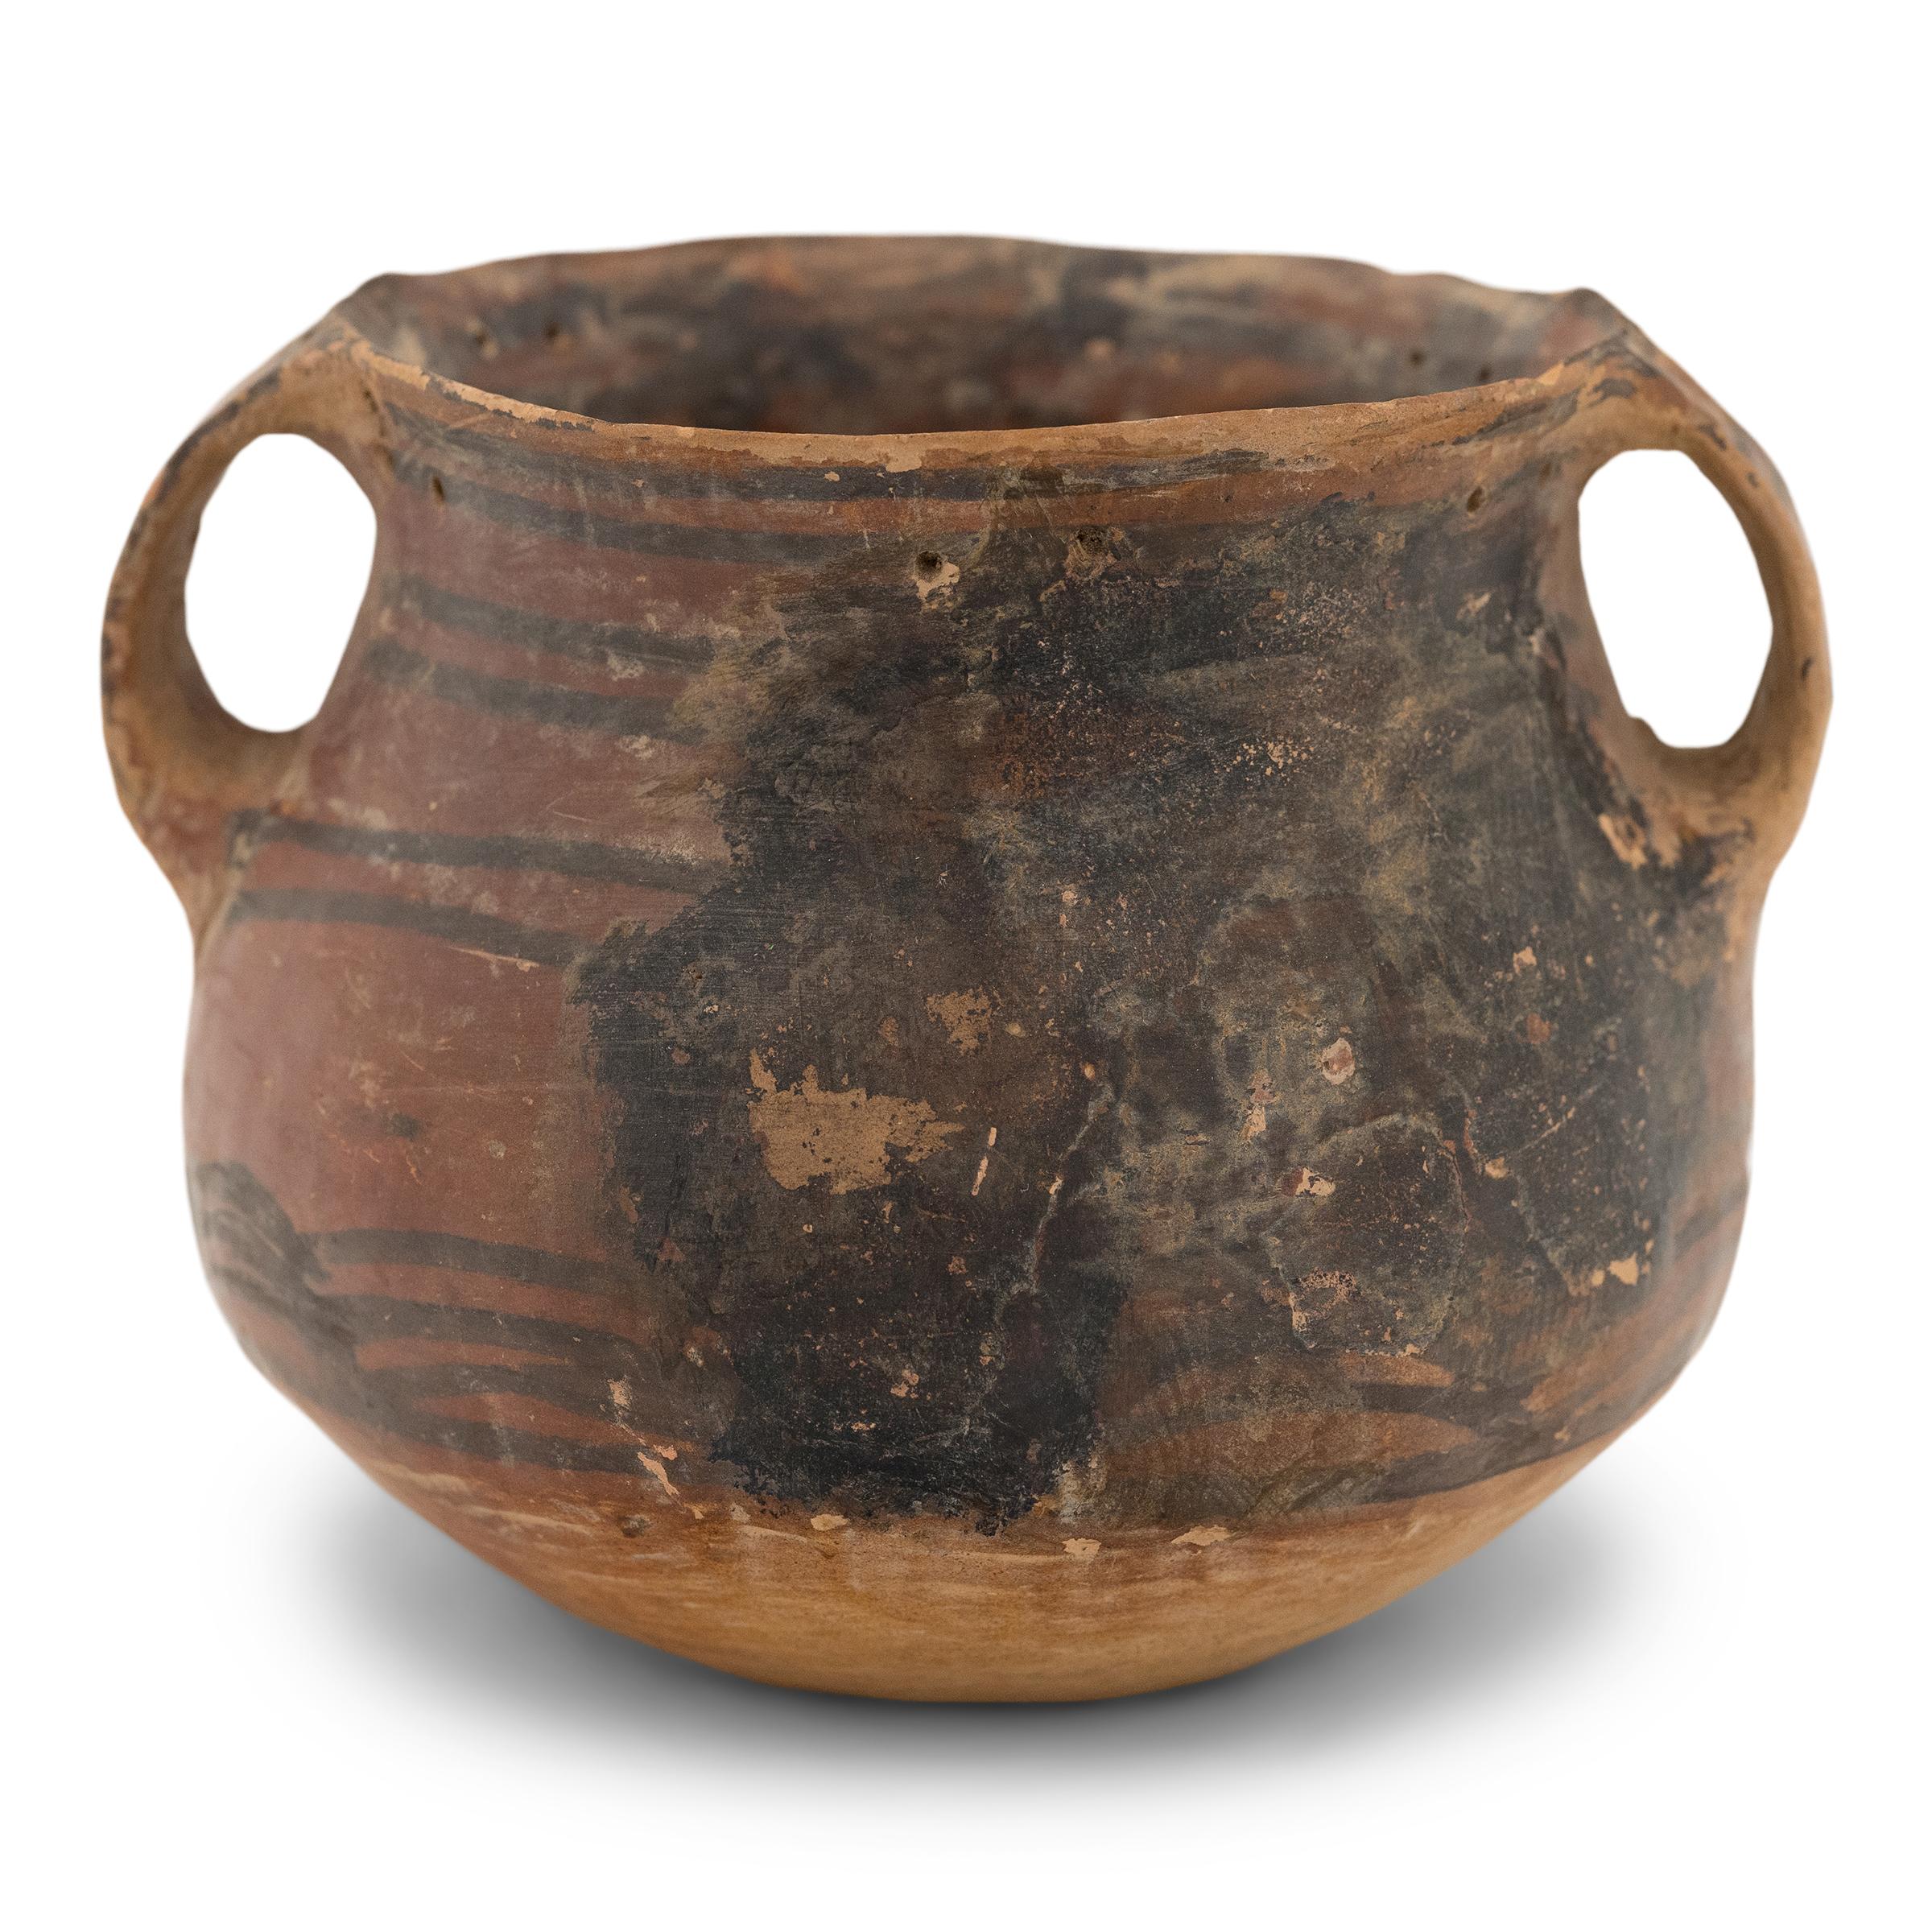 Bei diesem zierlichen Keramikgefäß handelt es sich vermutlich um ein späteres Exemplar der neolithischen chinesischen Rotware-Keramik der Yangshao-Kultur. Das genaue Alter des Gefäßes ist zwar nicht bekannt, aber es wurde wahrscheinlich um 5000-3000